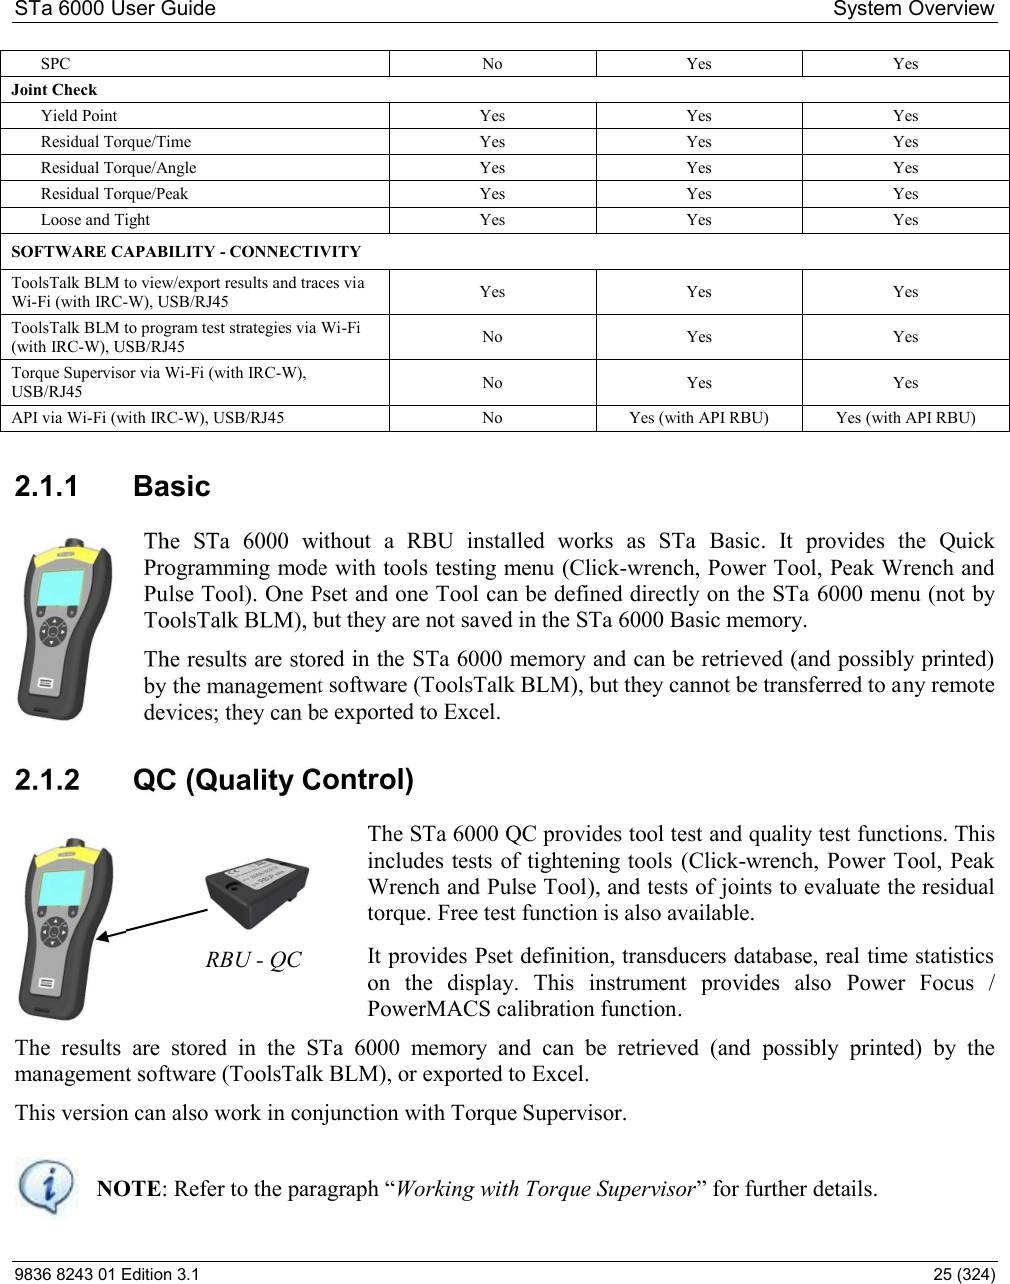 Atlas copco power focus manual